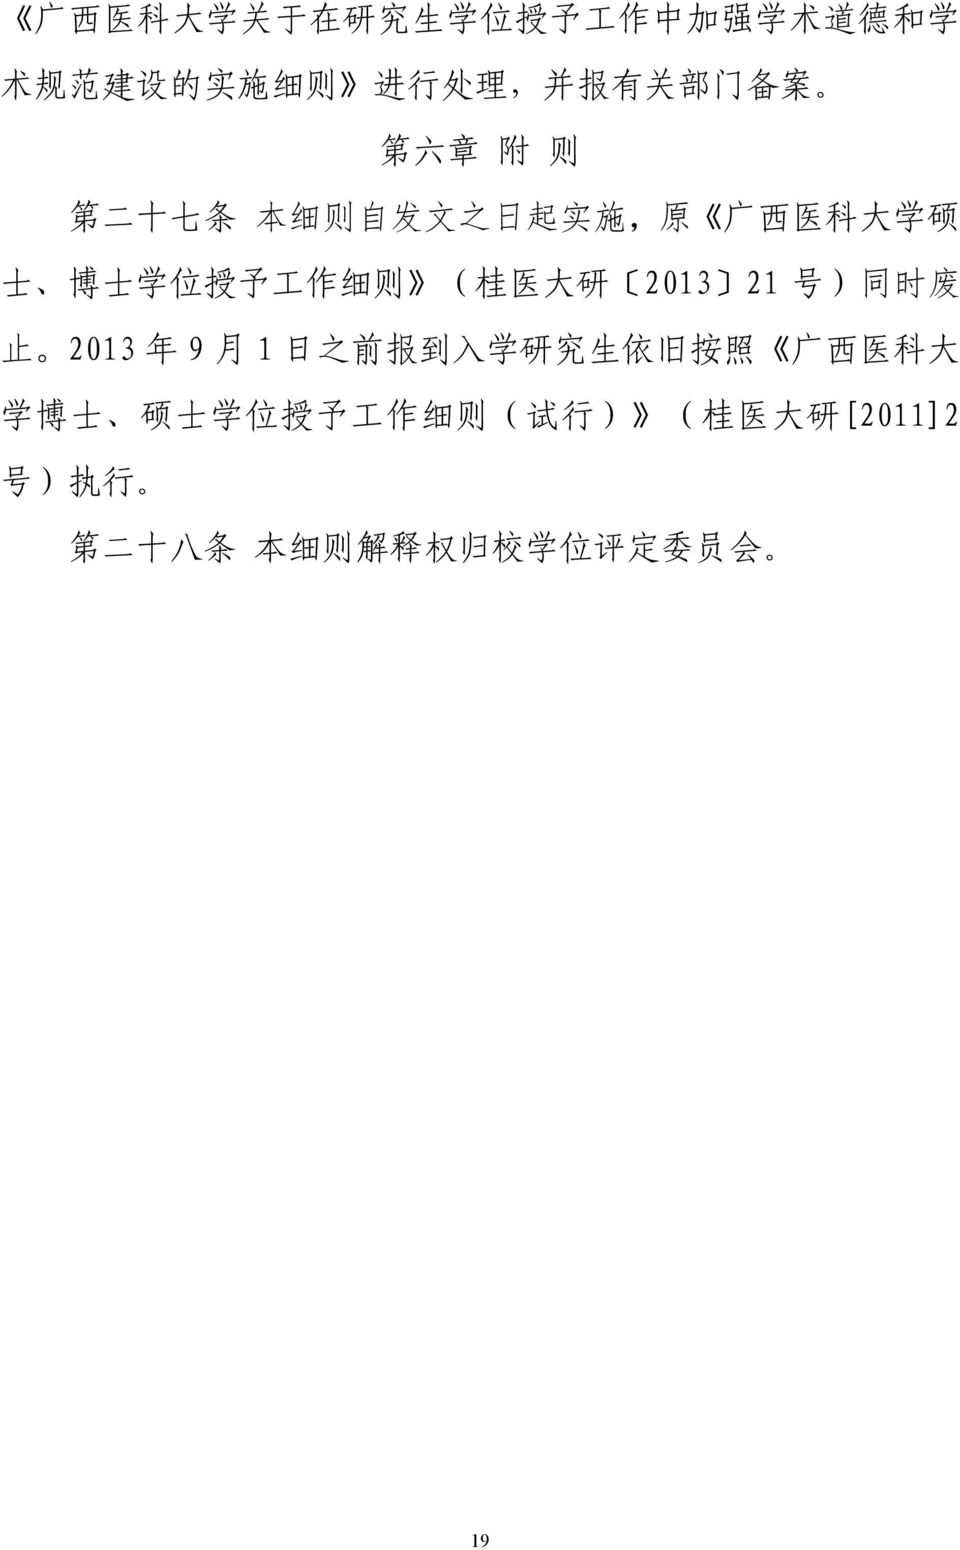 桂 医 大 研 2013 21 号 ) 同 时 废 止 2013 年 9 月 1 日 之 前 报 到 入 学 研 究 生 依 旧 按 照 广 西 医 科 大 学 博 士 硕 士 学